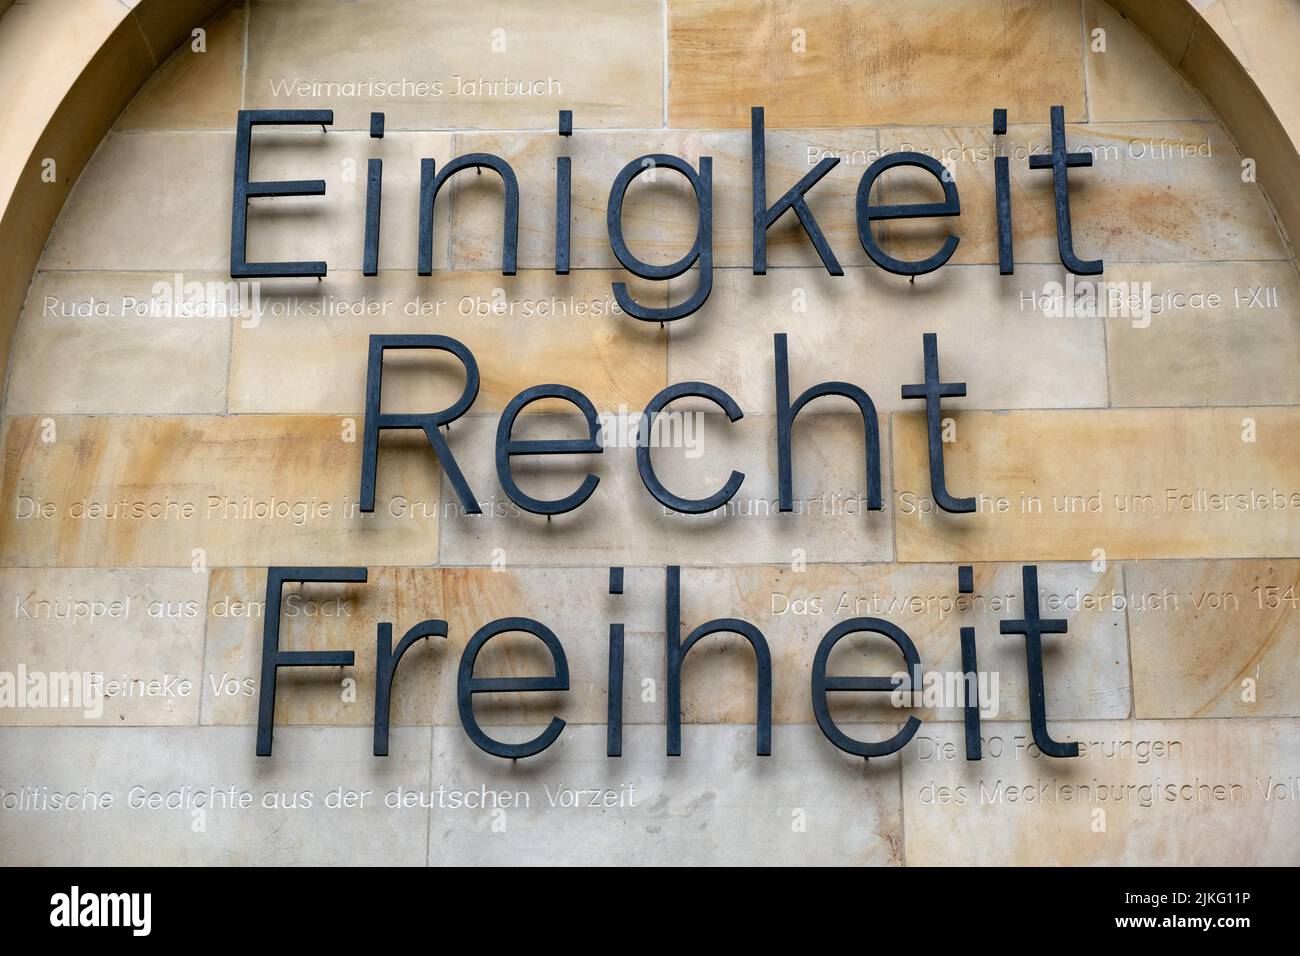 10.05.2021, Allemagne, Basse-Saxe, Hanovre - EINIGKEIT, Recht, Freiheit- extrait de l'hymne national allemand et lettrage sur le mur extérieur du Banque D'Images